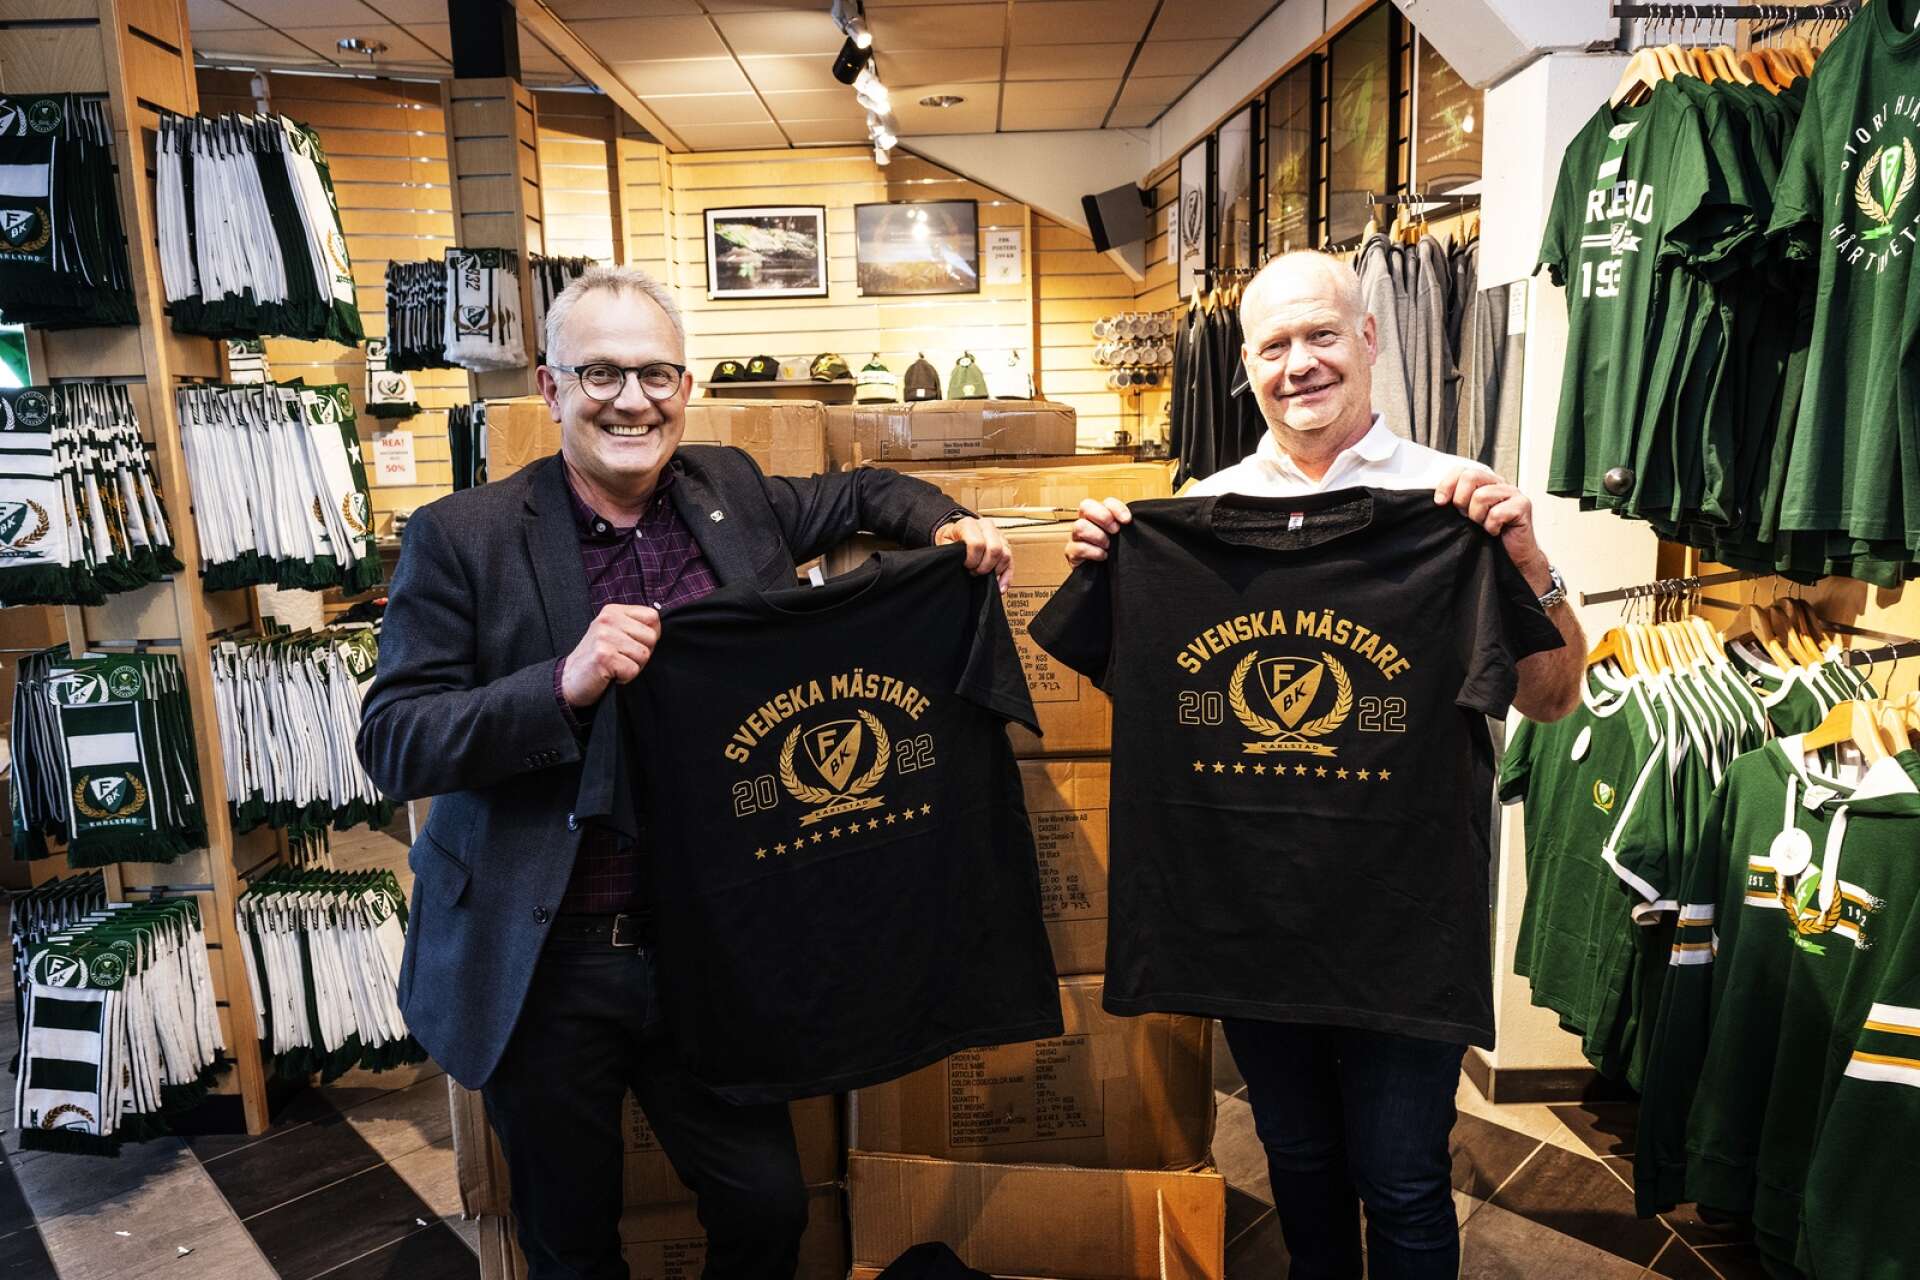 Färjestads vd Stefan Larsson och Lars Nyquist, säljansvarig i FBK-shoppen, konstaterar att guldtröjorna säljer som paraplyer i spöregn – redan nu har FBK sålt för över miljonen.